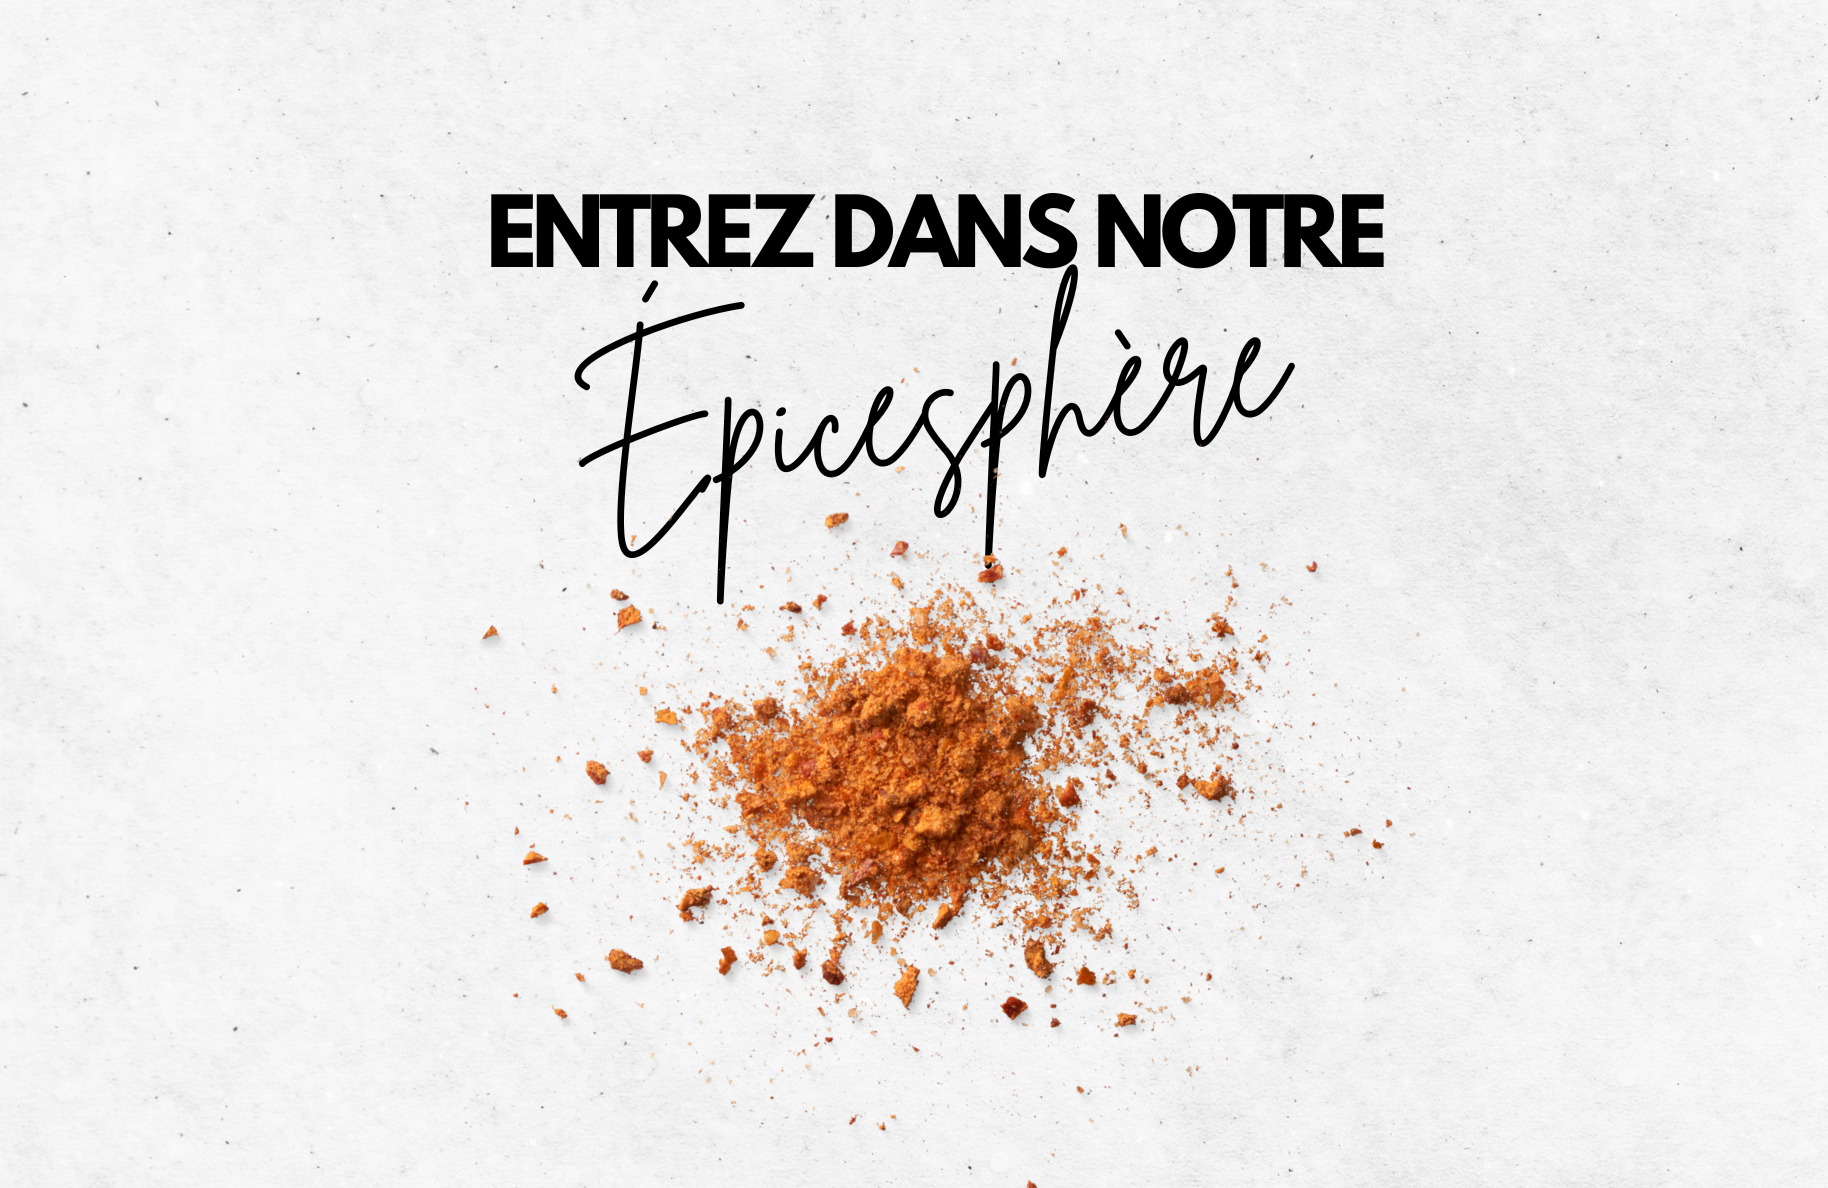 COFFRET D'ÉPICES TOUR DU MONDE (18 POTS) – A Spice Affair.